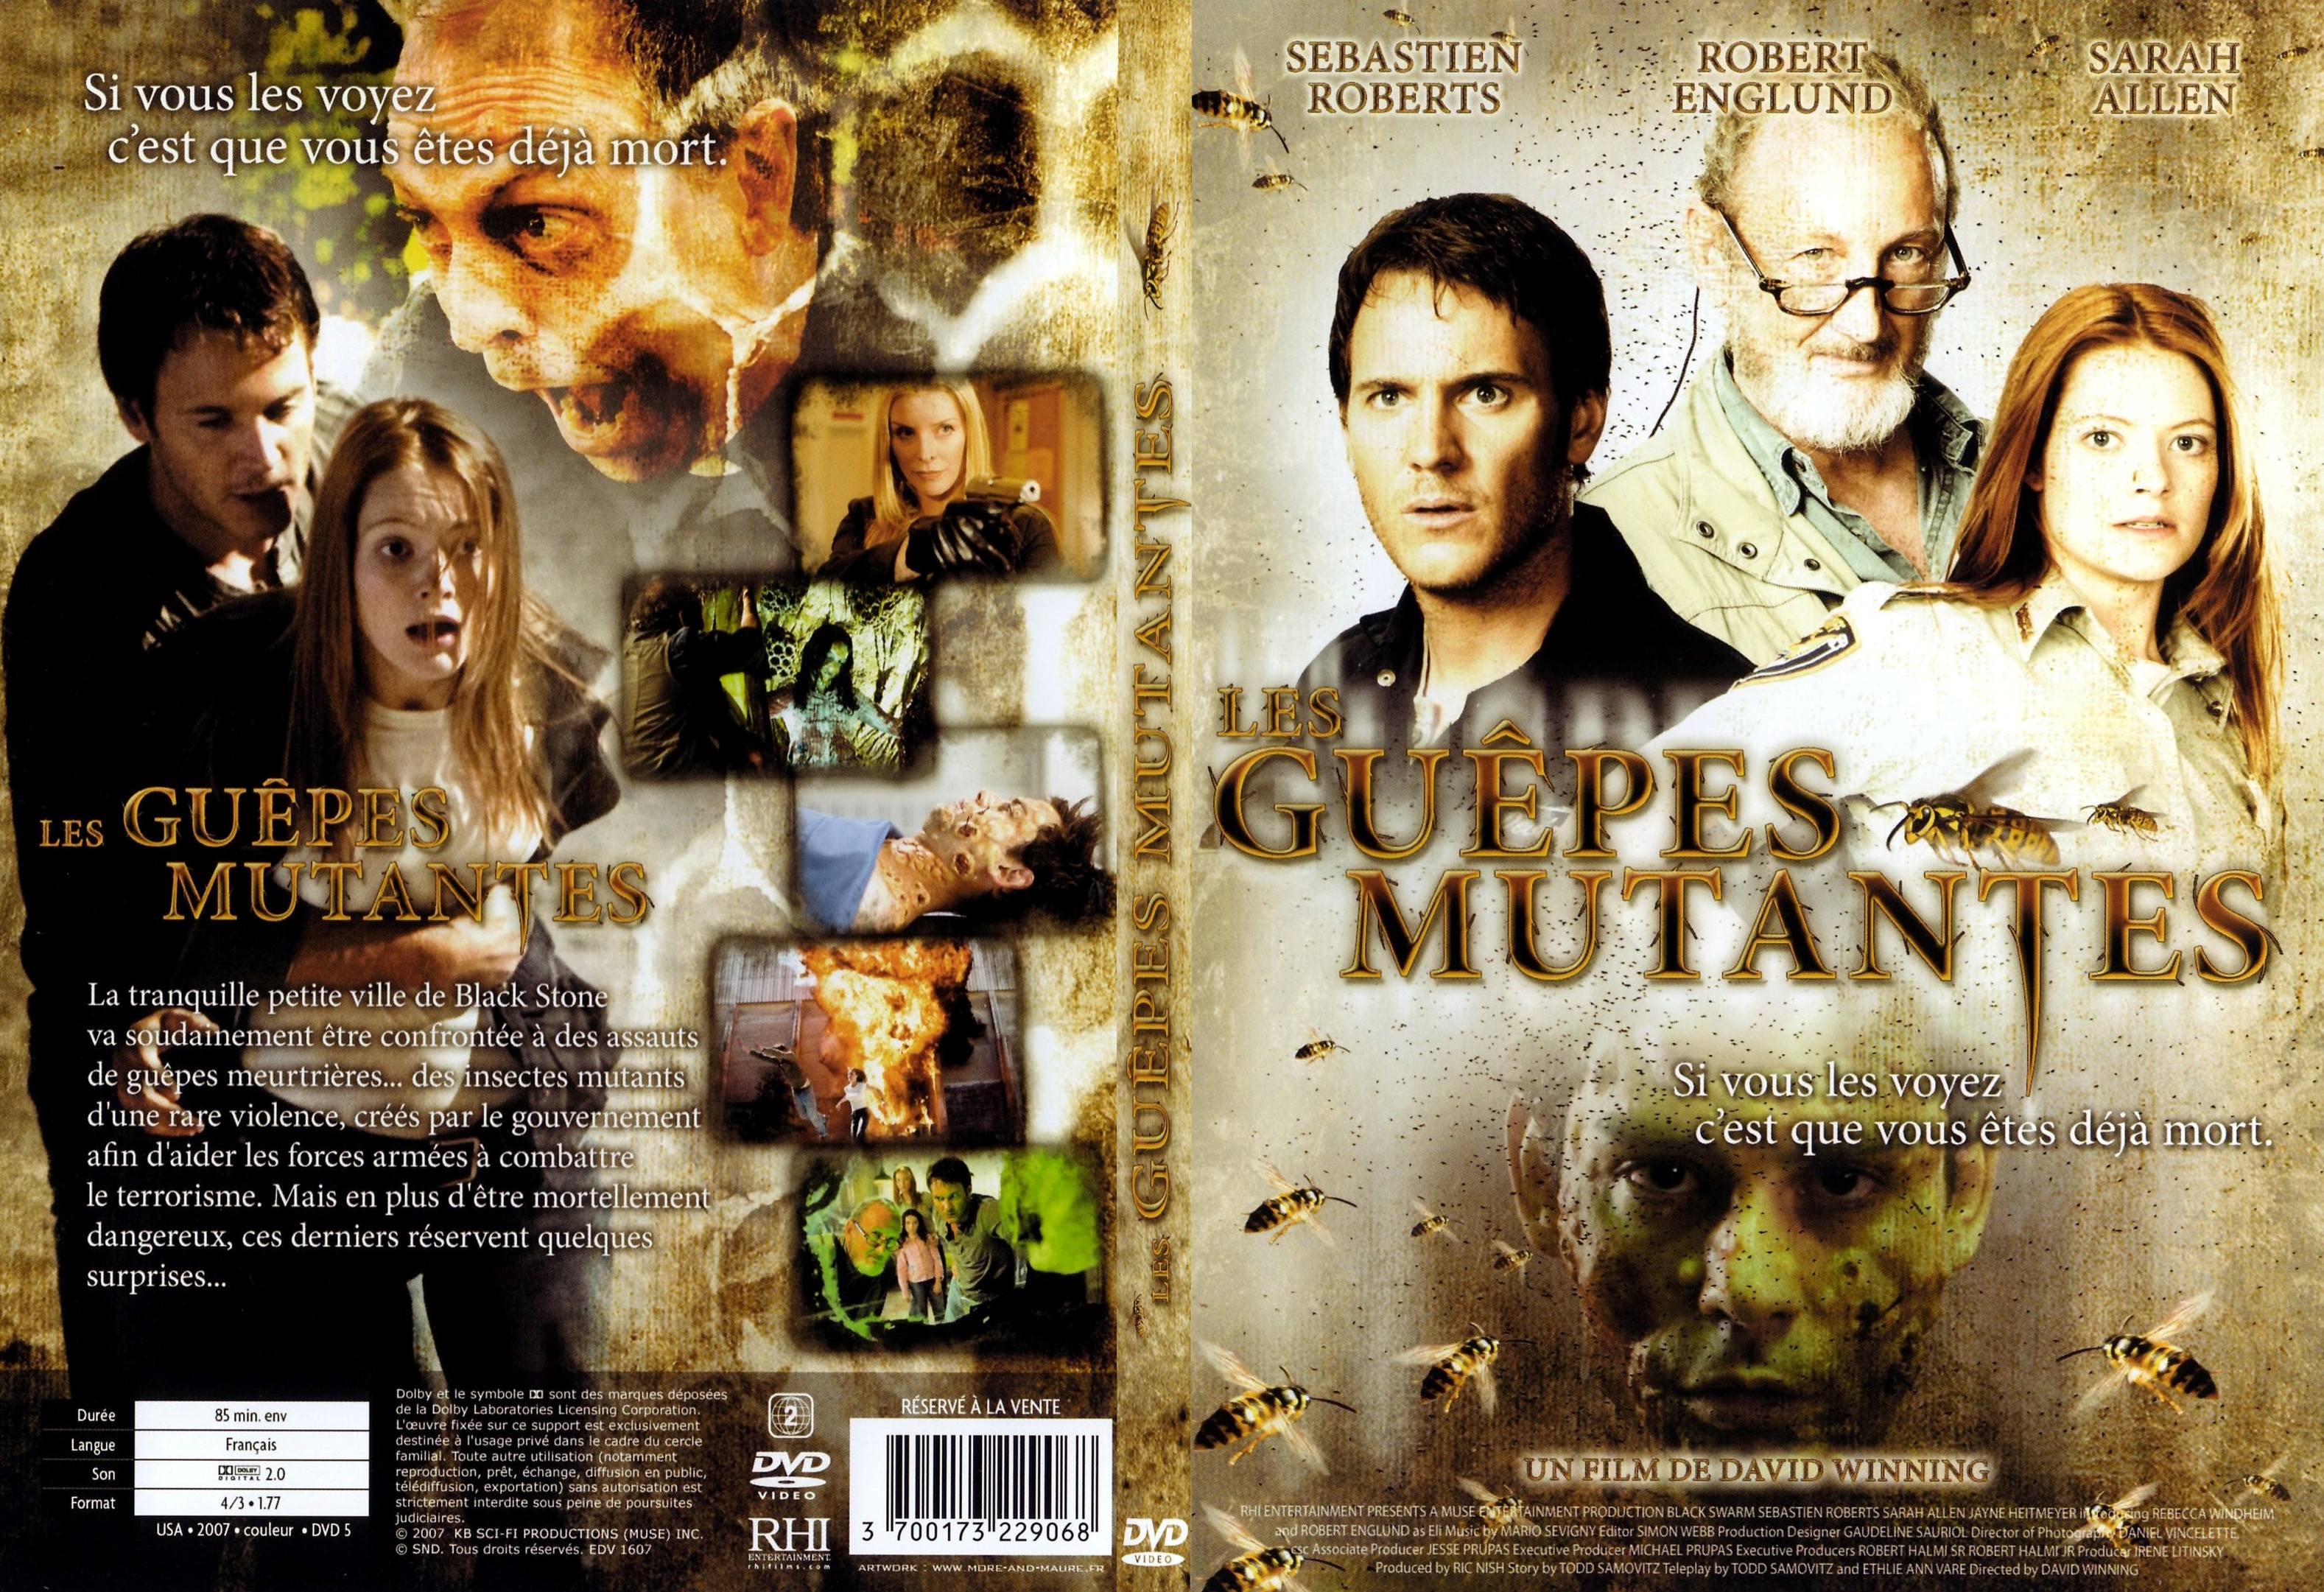 Jaquette DVD Les guepes mutantes - SLIM